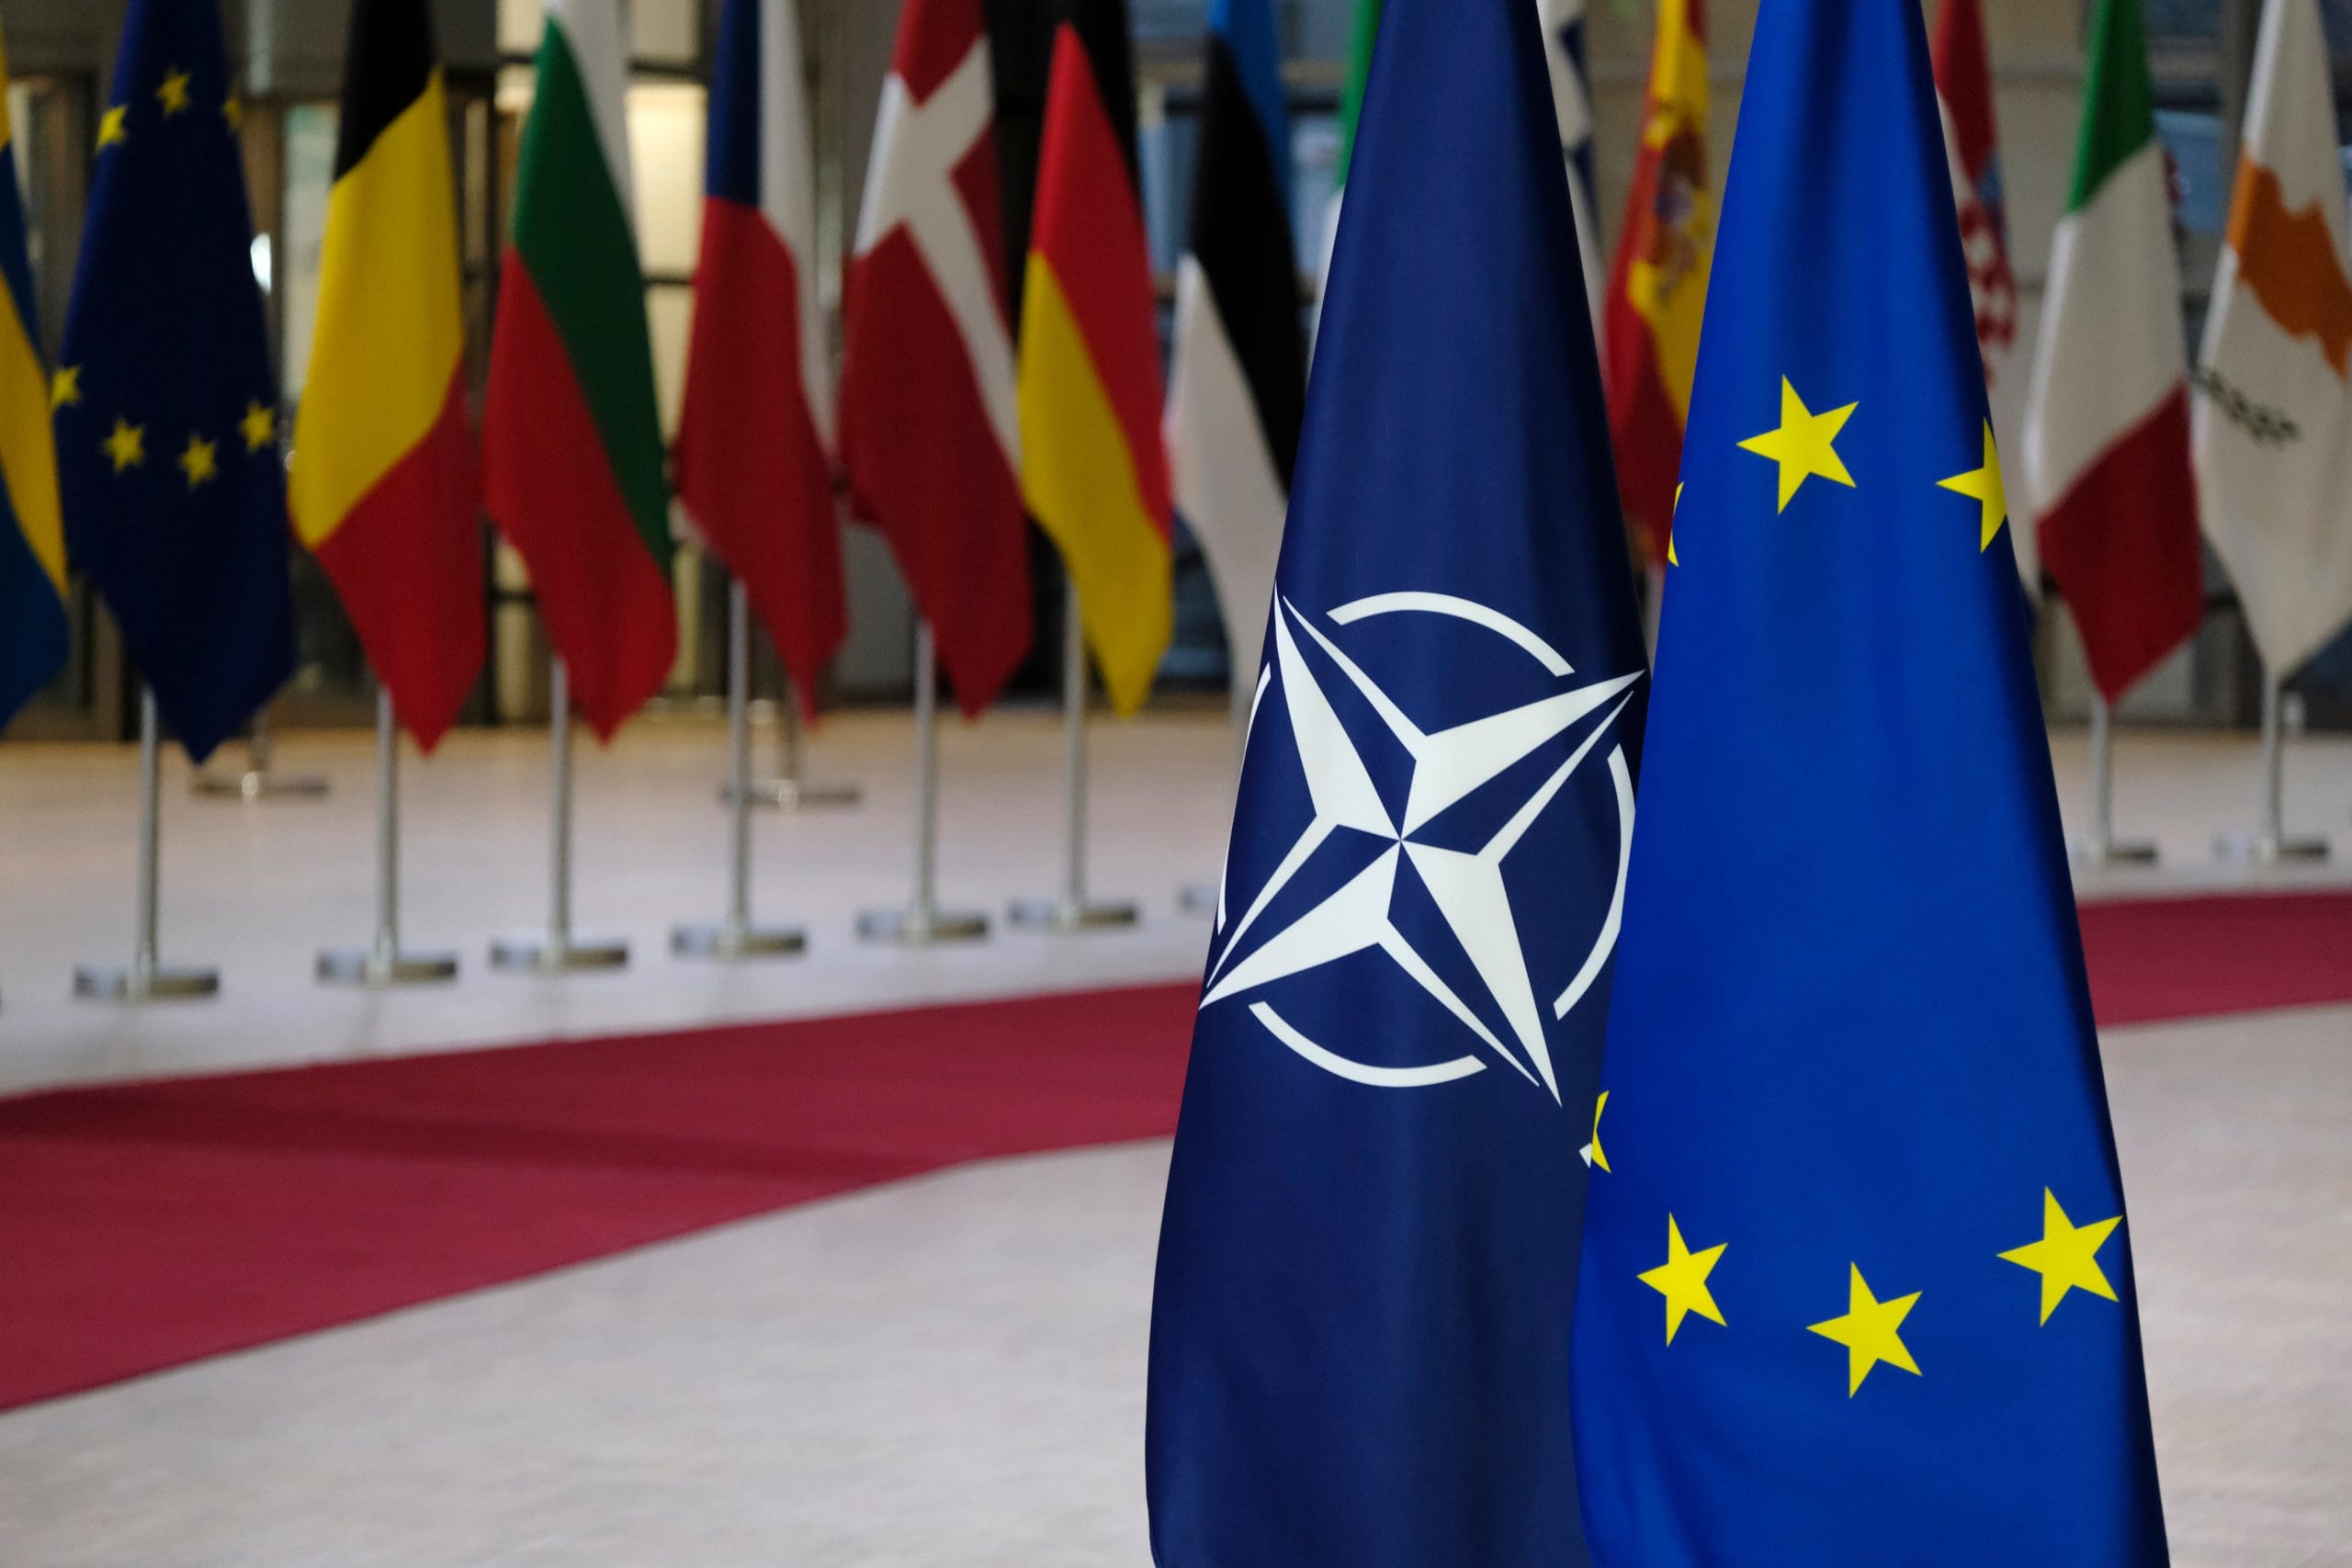 Le project de défense européenne don't on parle au Conseil européen est mort-né